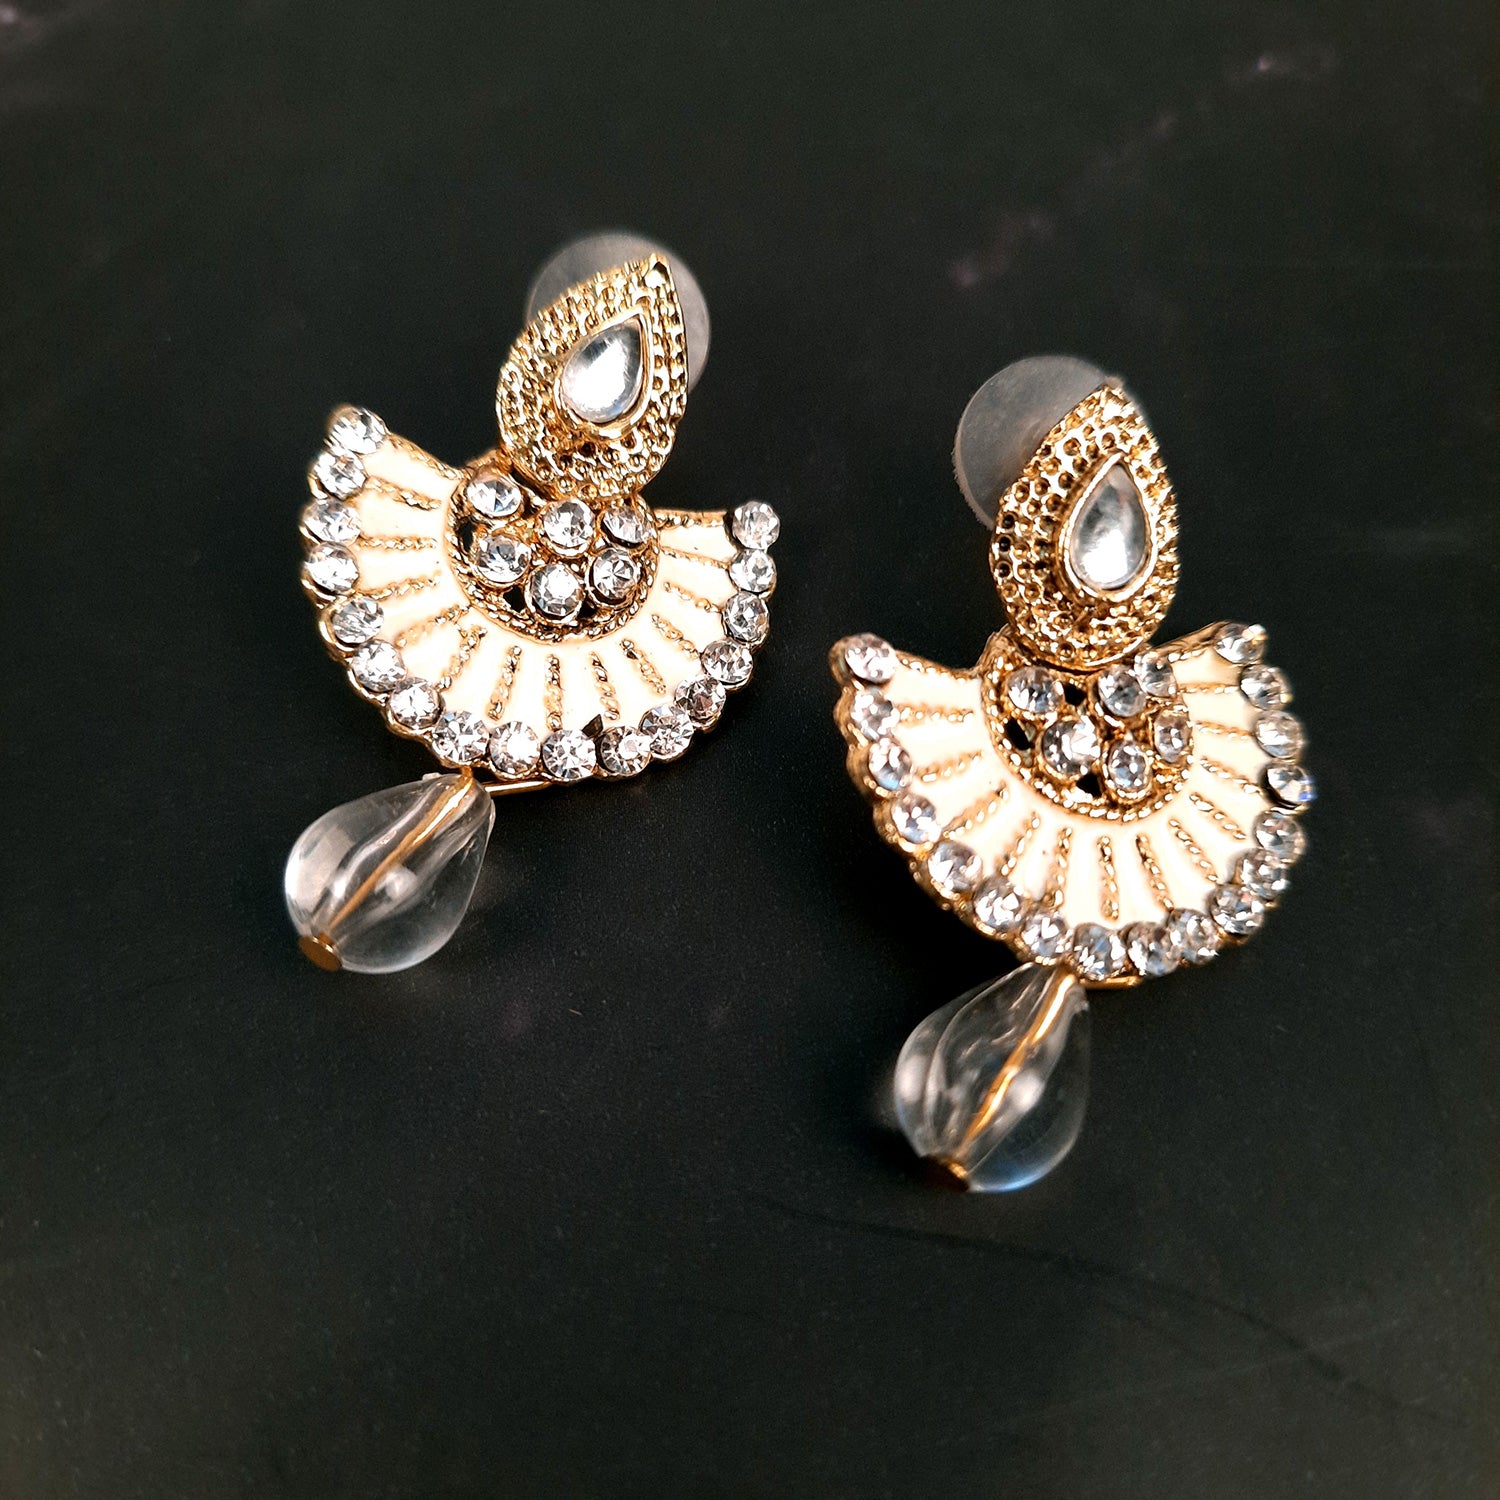 Moonstruck Diamond Dangle Drop Earrings for Girls Stylish (Silver) –  www.Moonstruckinc.com